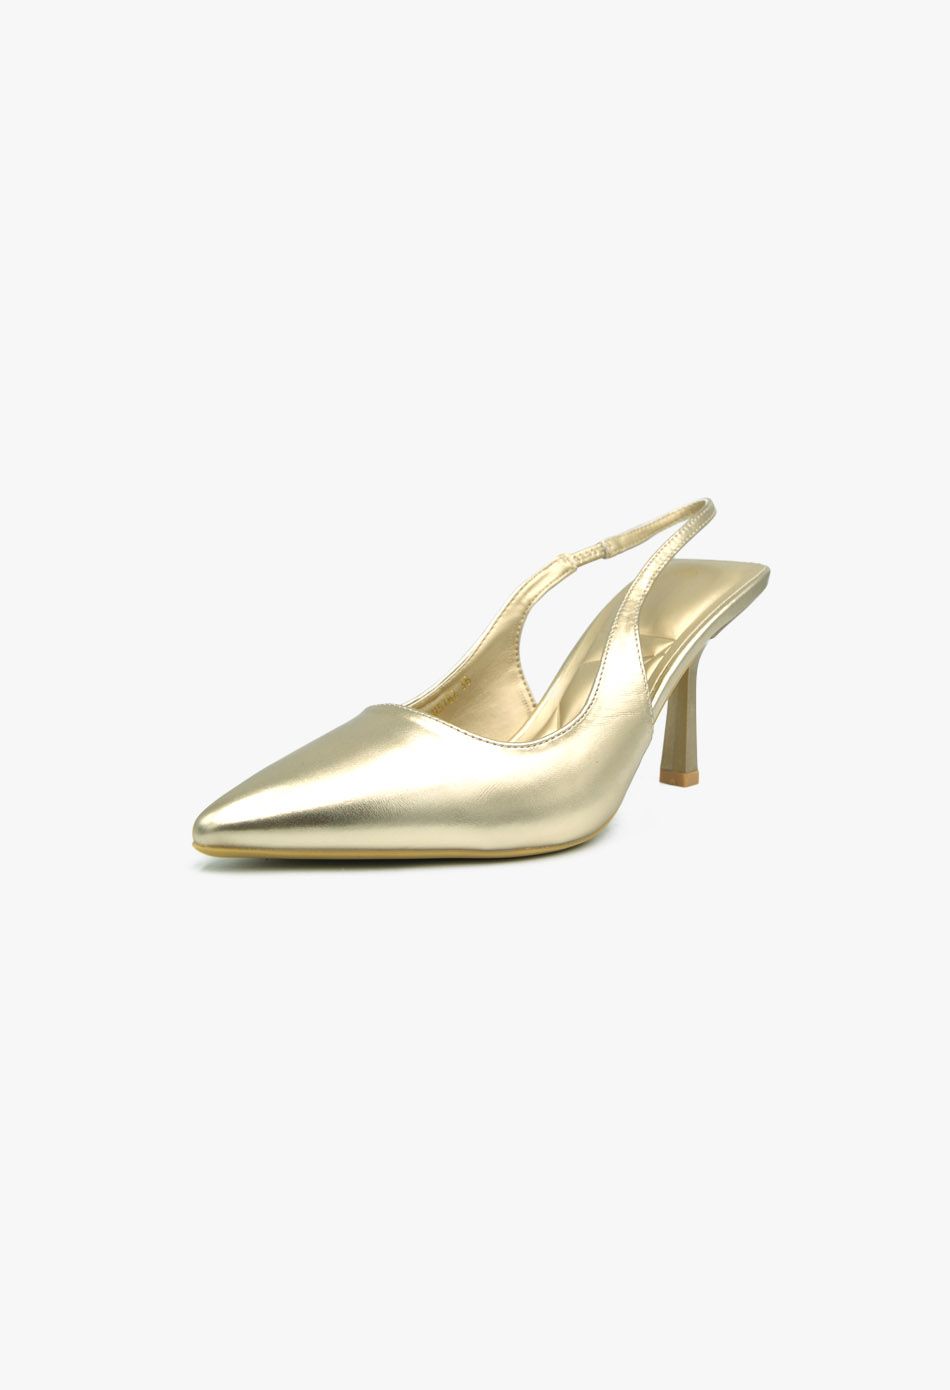 Γόβες Μυτερές Open Heel Μεσαίο Τακούνι Χρυσό / H5782-gold Ανοιχτά Παπούτσια joya.gr